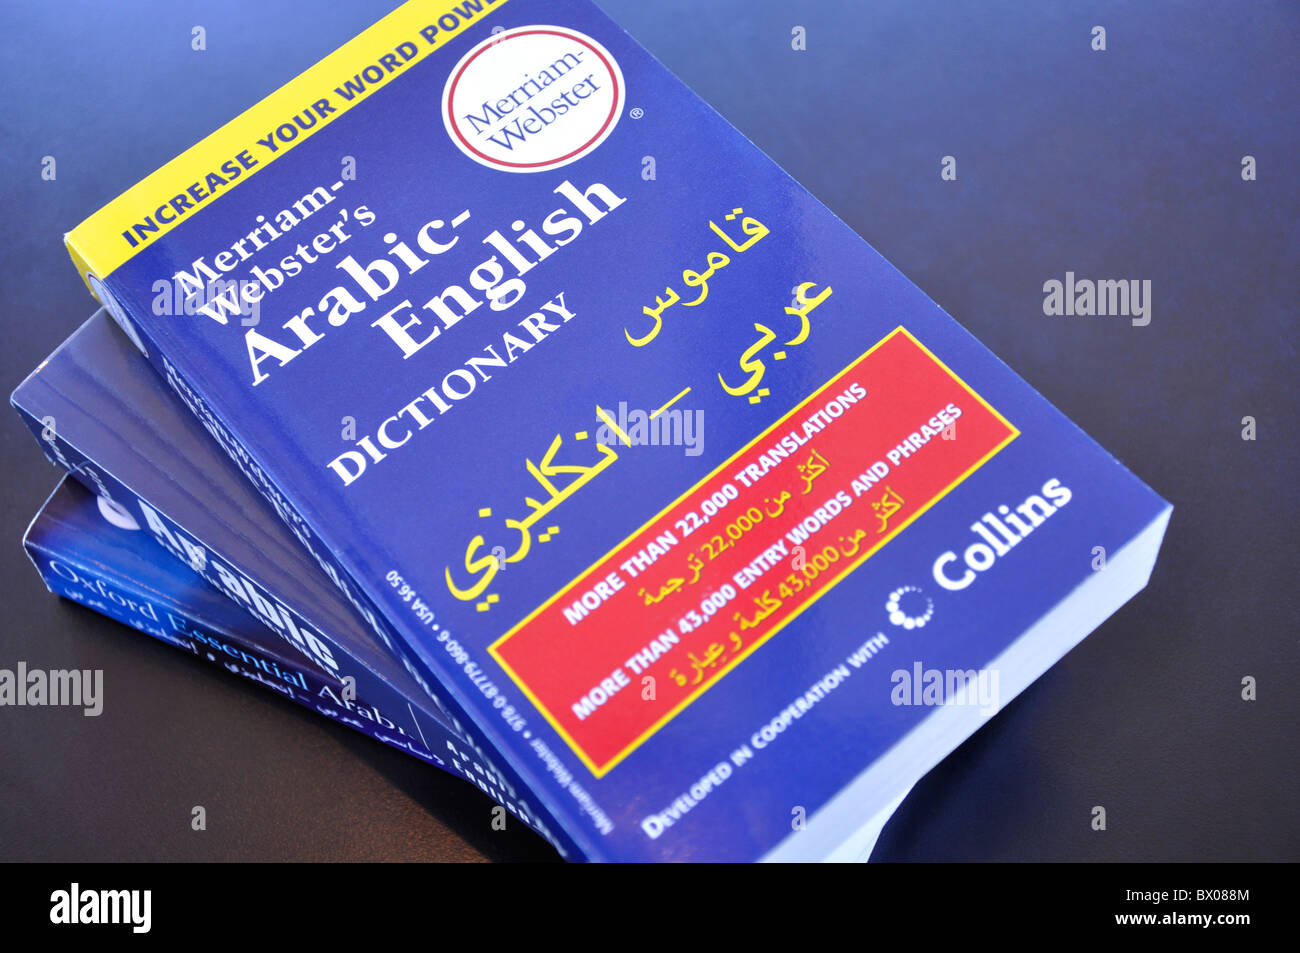 Arabisch - Englisch Wörterbuch Stockfoto